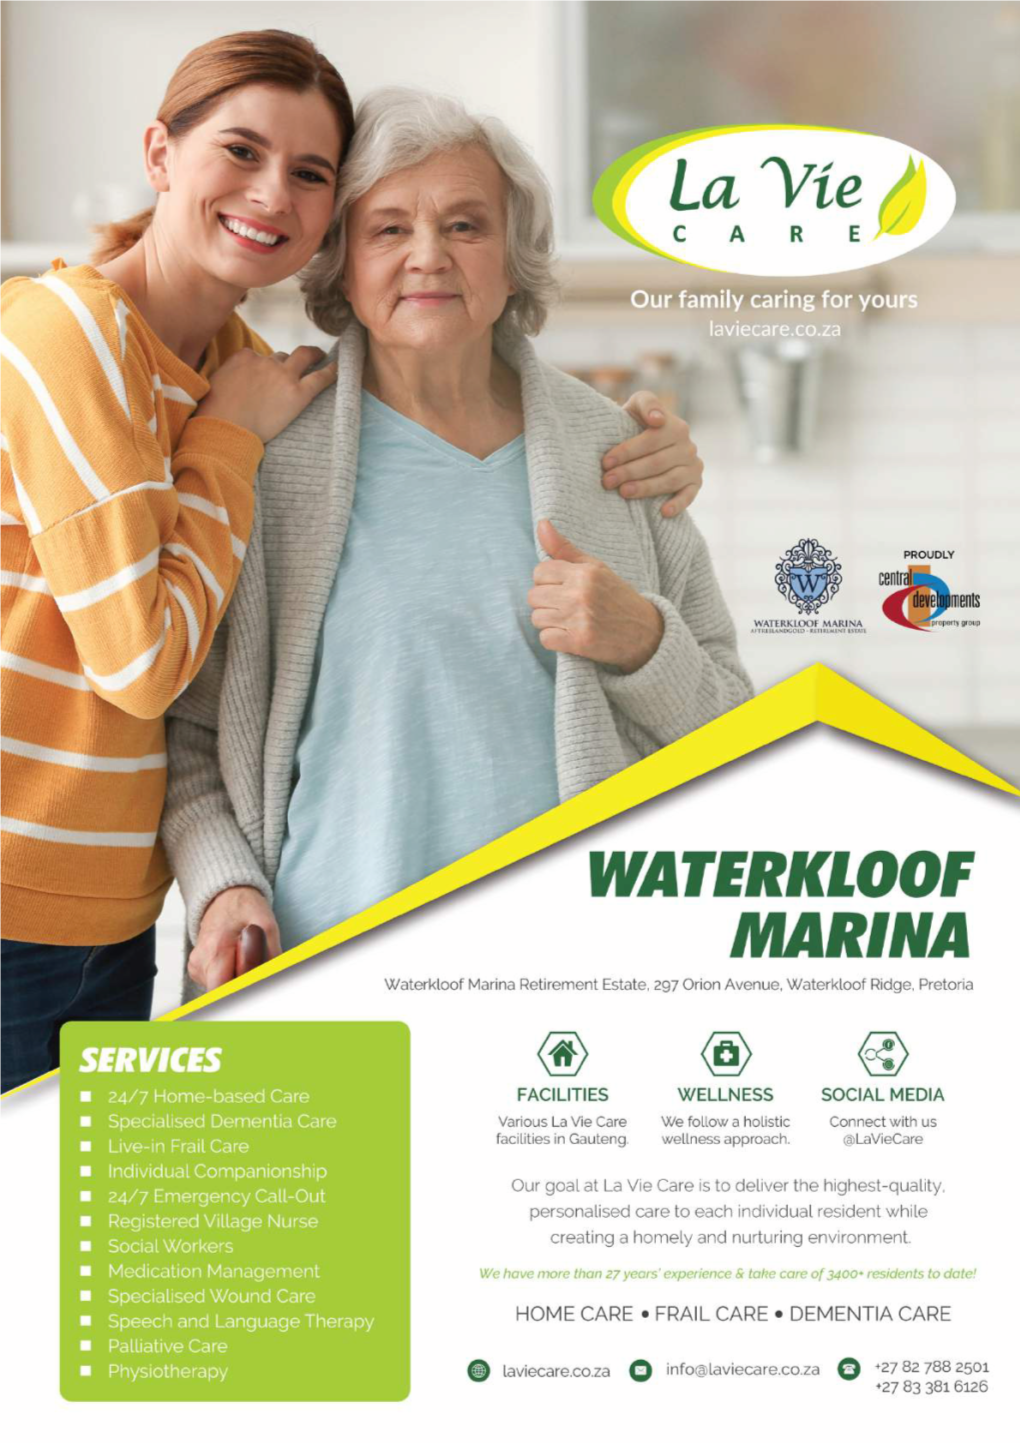 La Vie Care Service Brochure